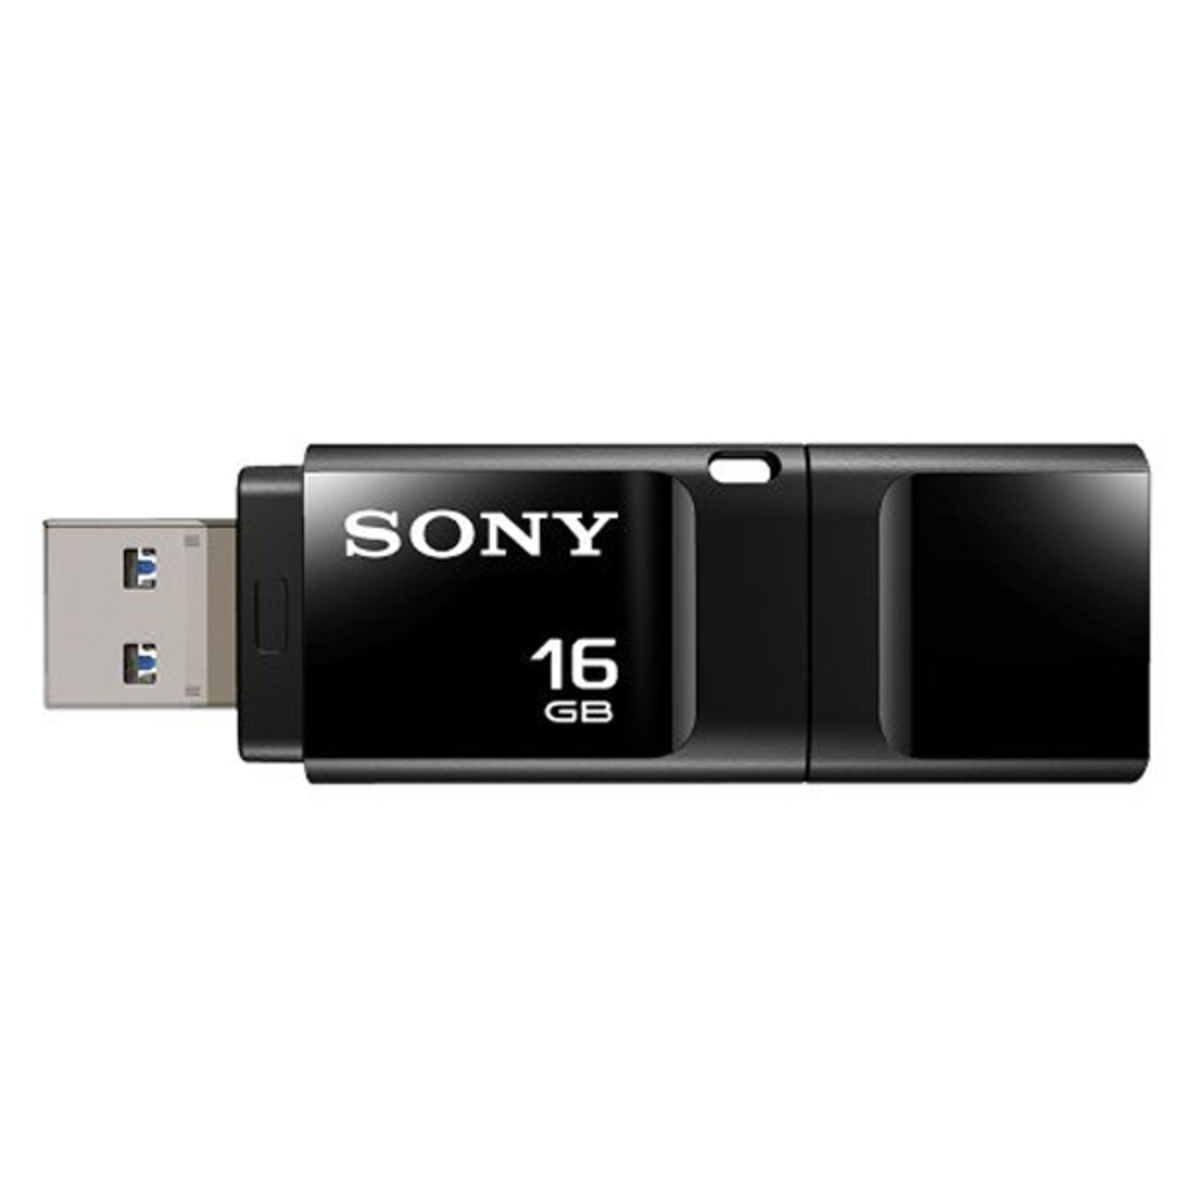 Sony Flash Drive X Series 16GB Black